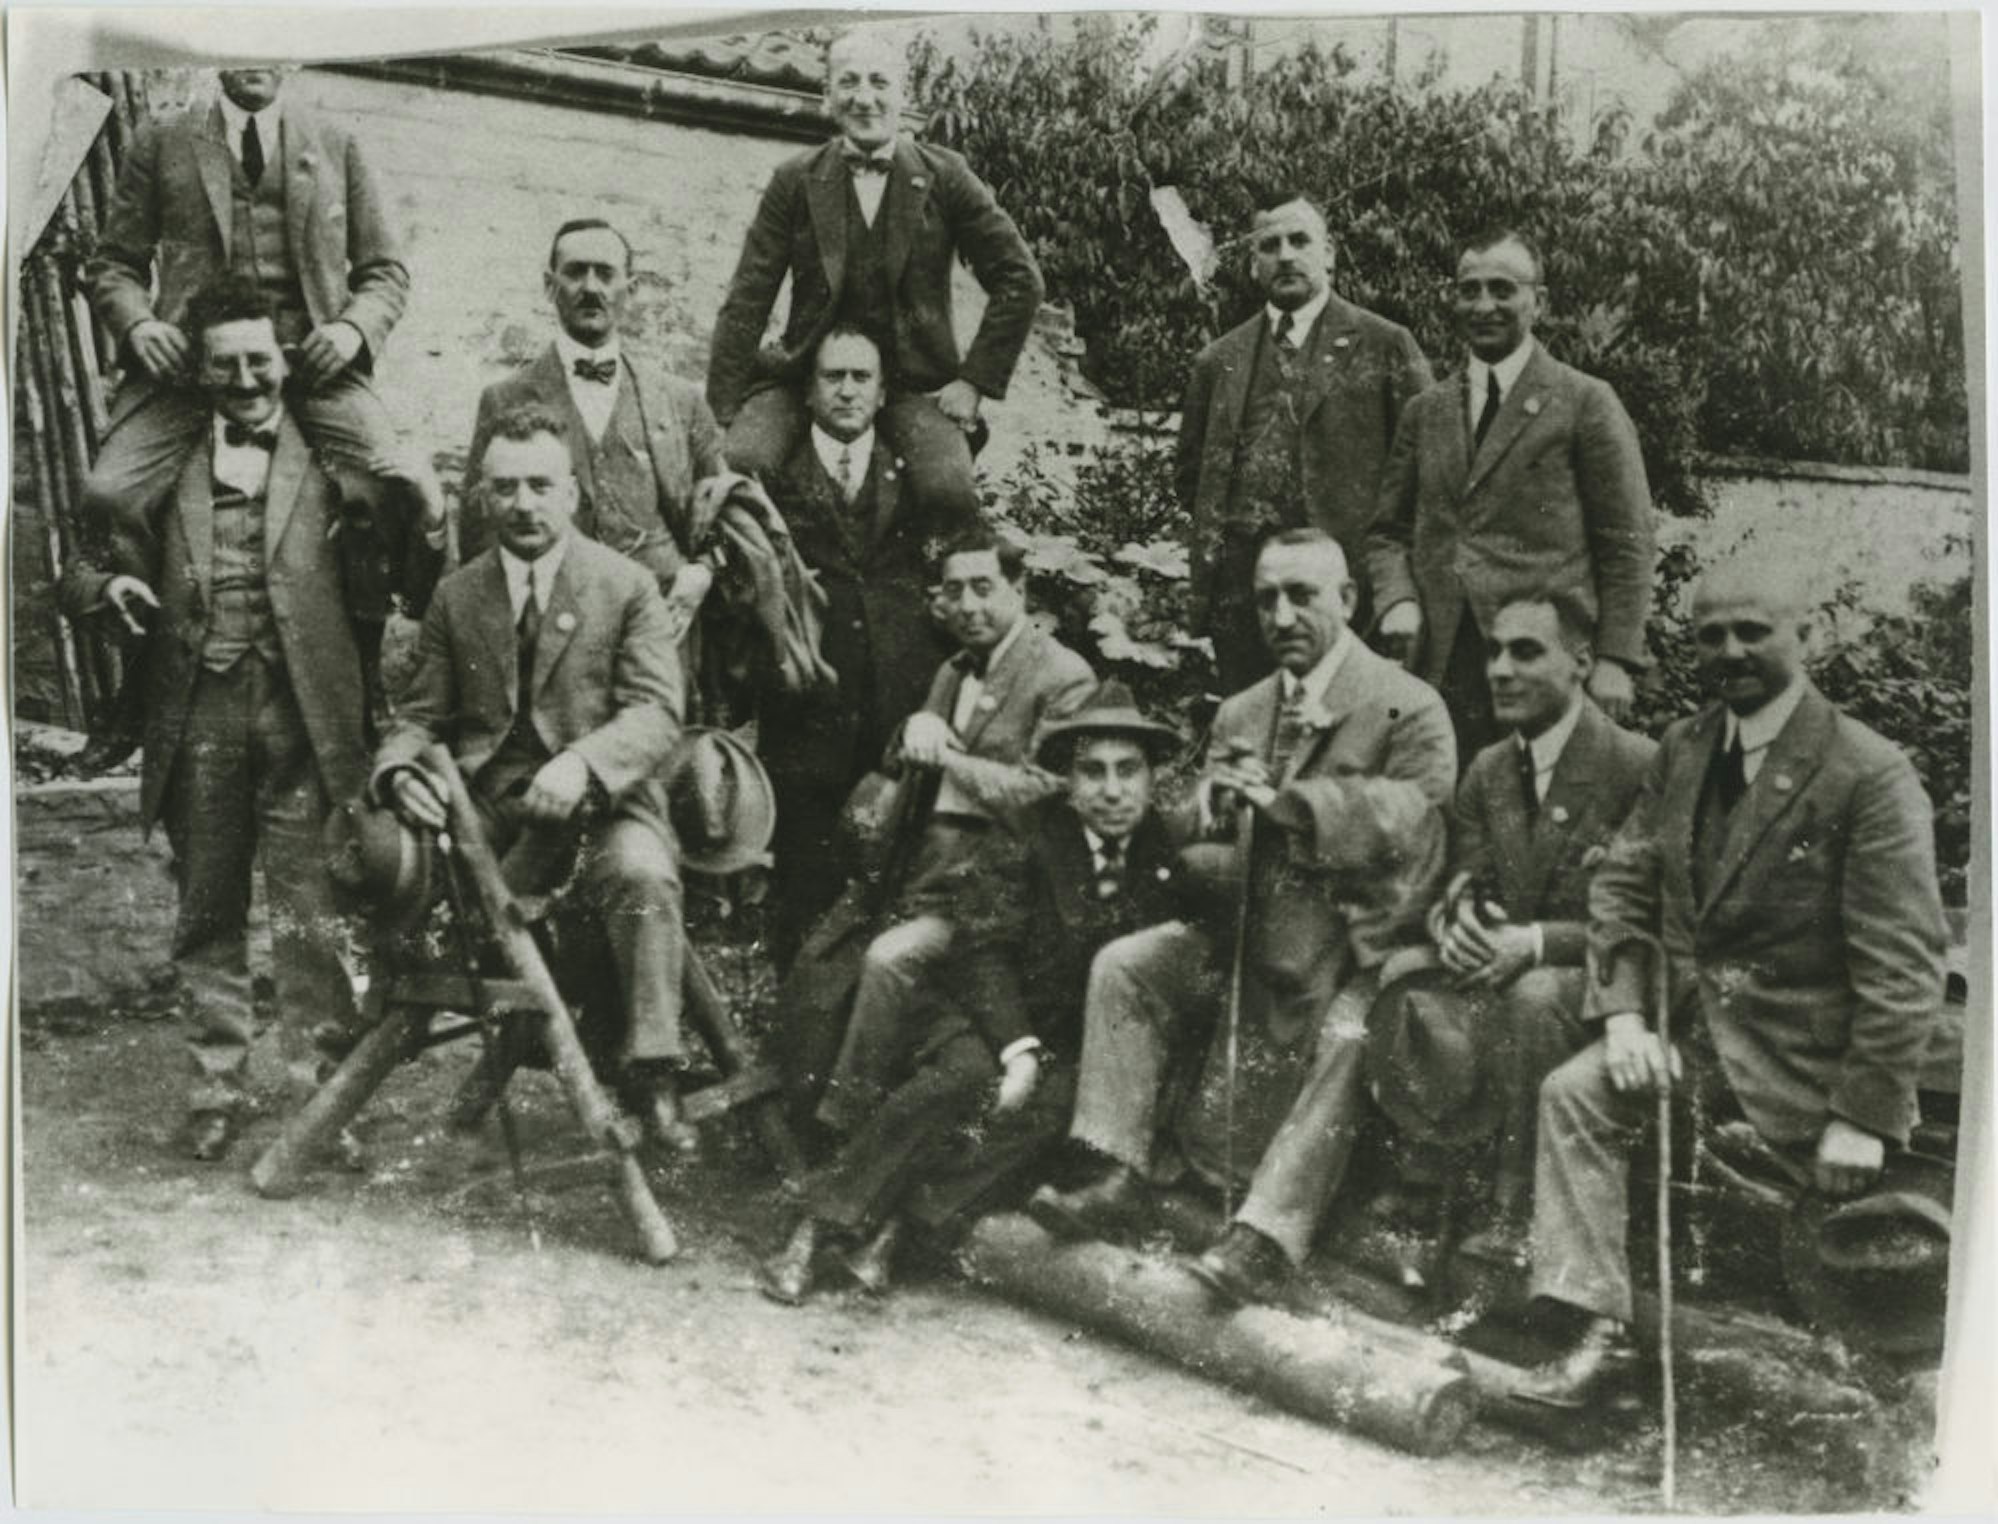 KKK-Mitglieder (Kleiner Kölner Klub) auf Vereinsausflug, darunter Max Salomon und sein Bruder Willi.